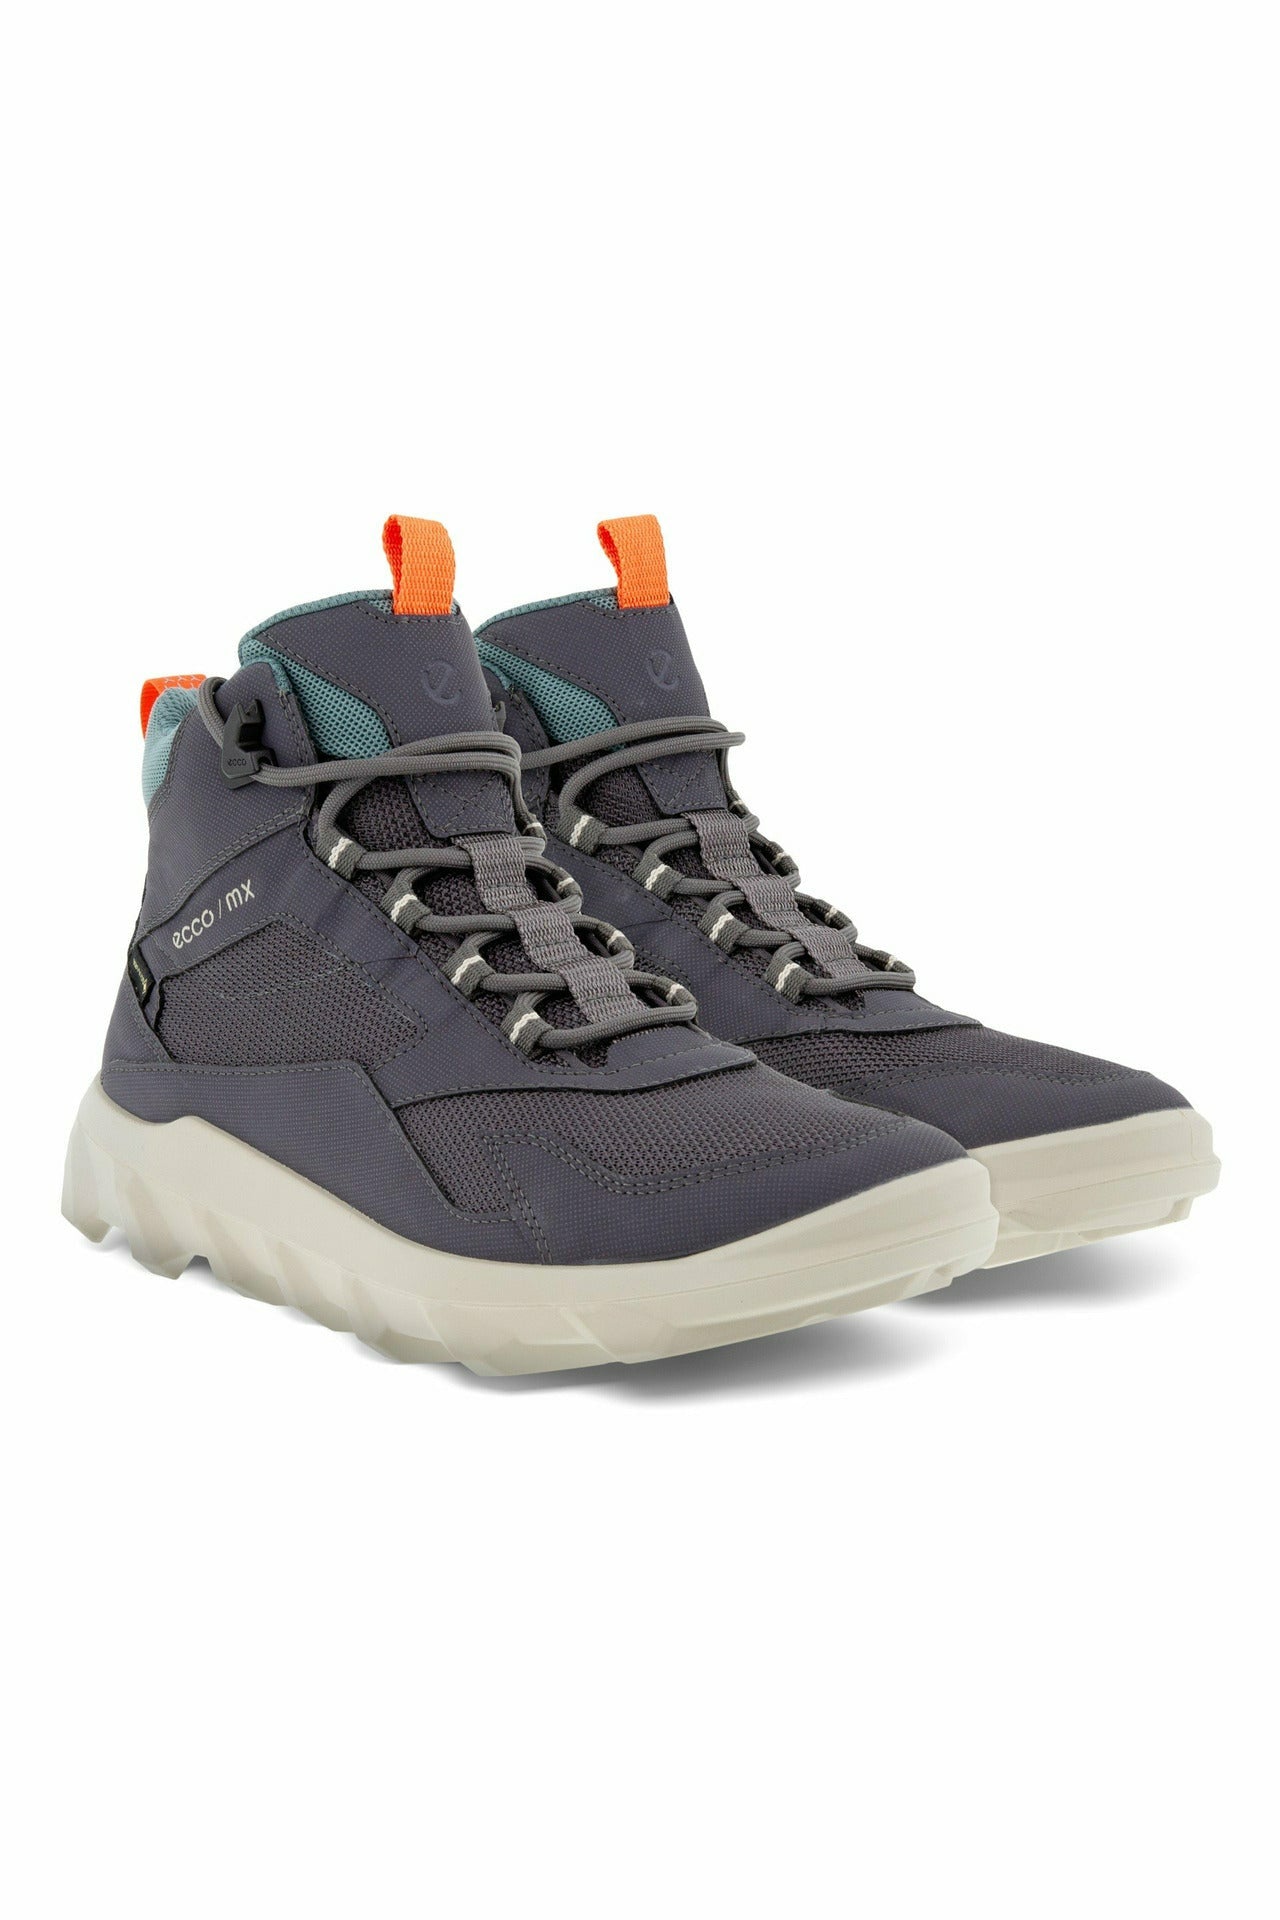 ECCO Mx Ladies Walking boot 820223-60091 in grey